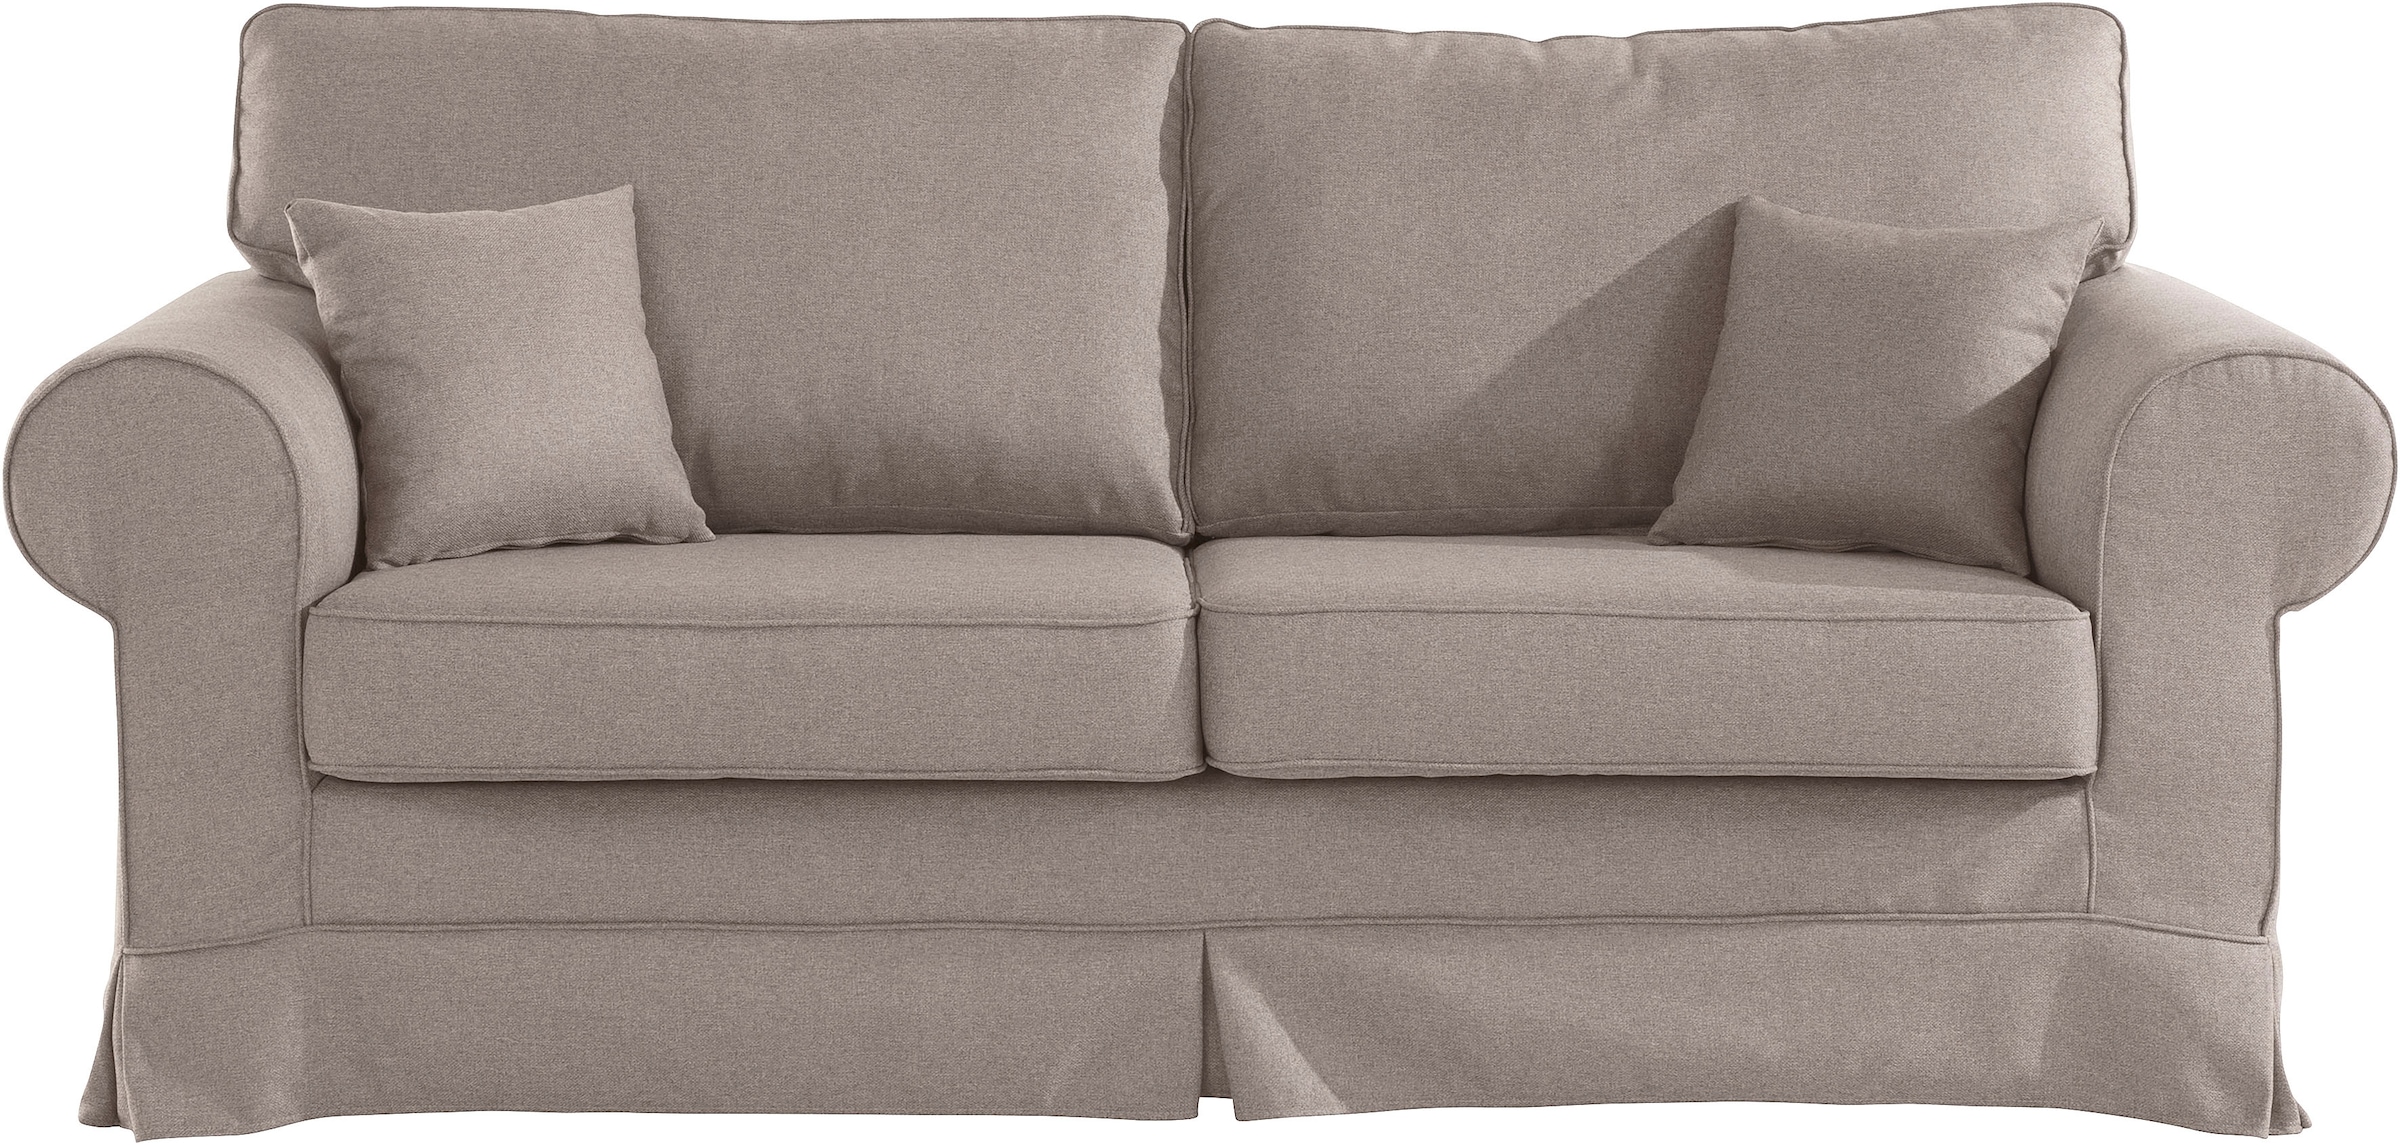 Trendige online Stretch Couchbezug kaufen